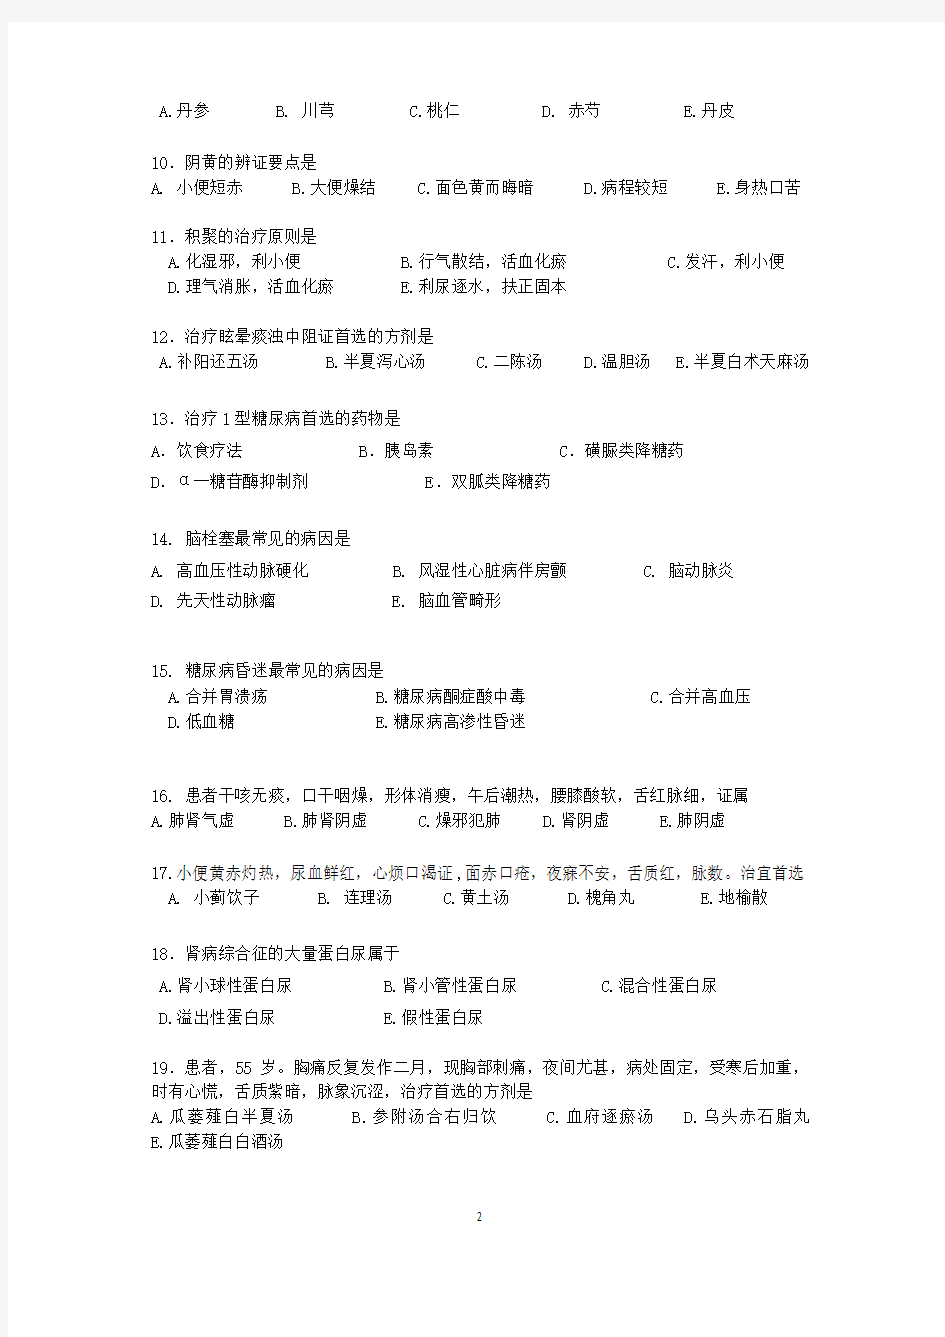 2018北京中医师定期考核业务水平测试题A卷(含答案)